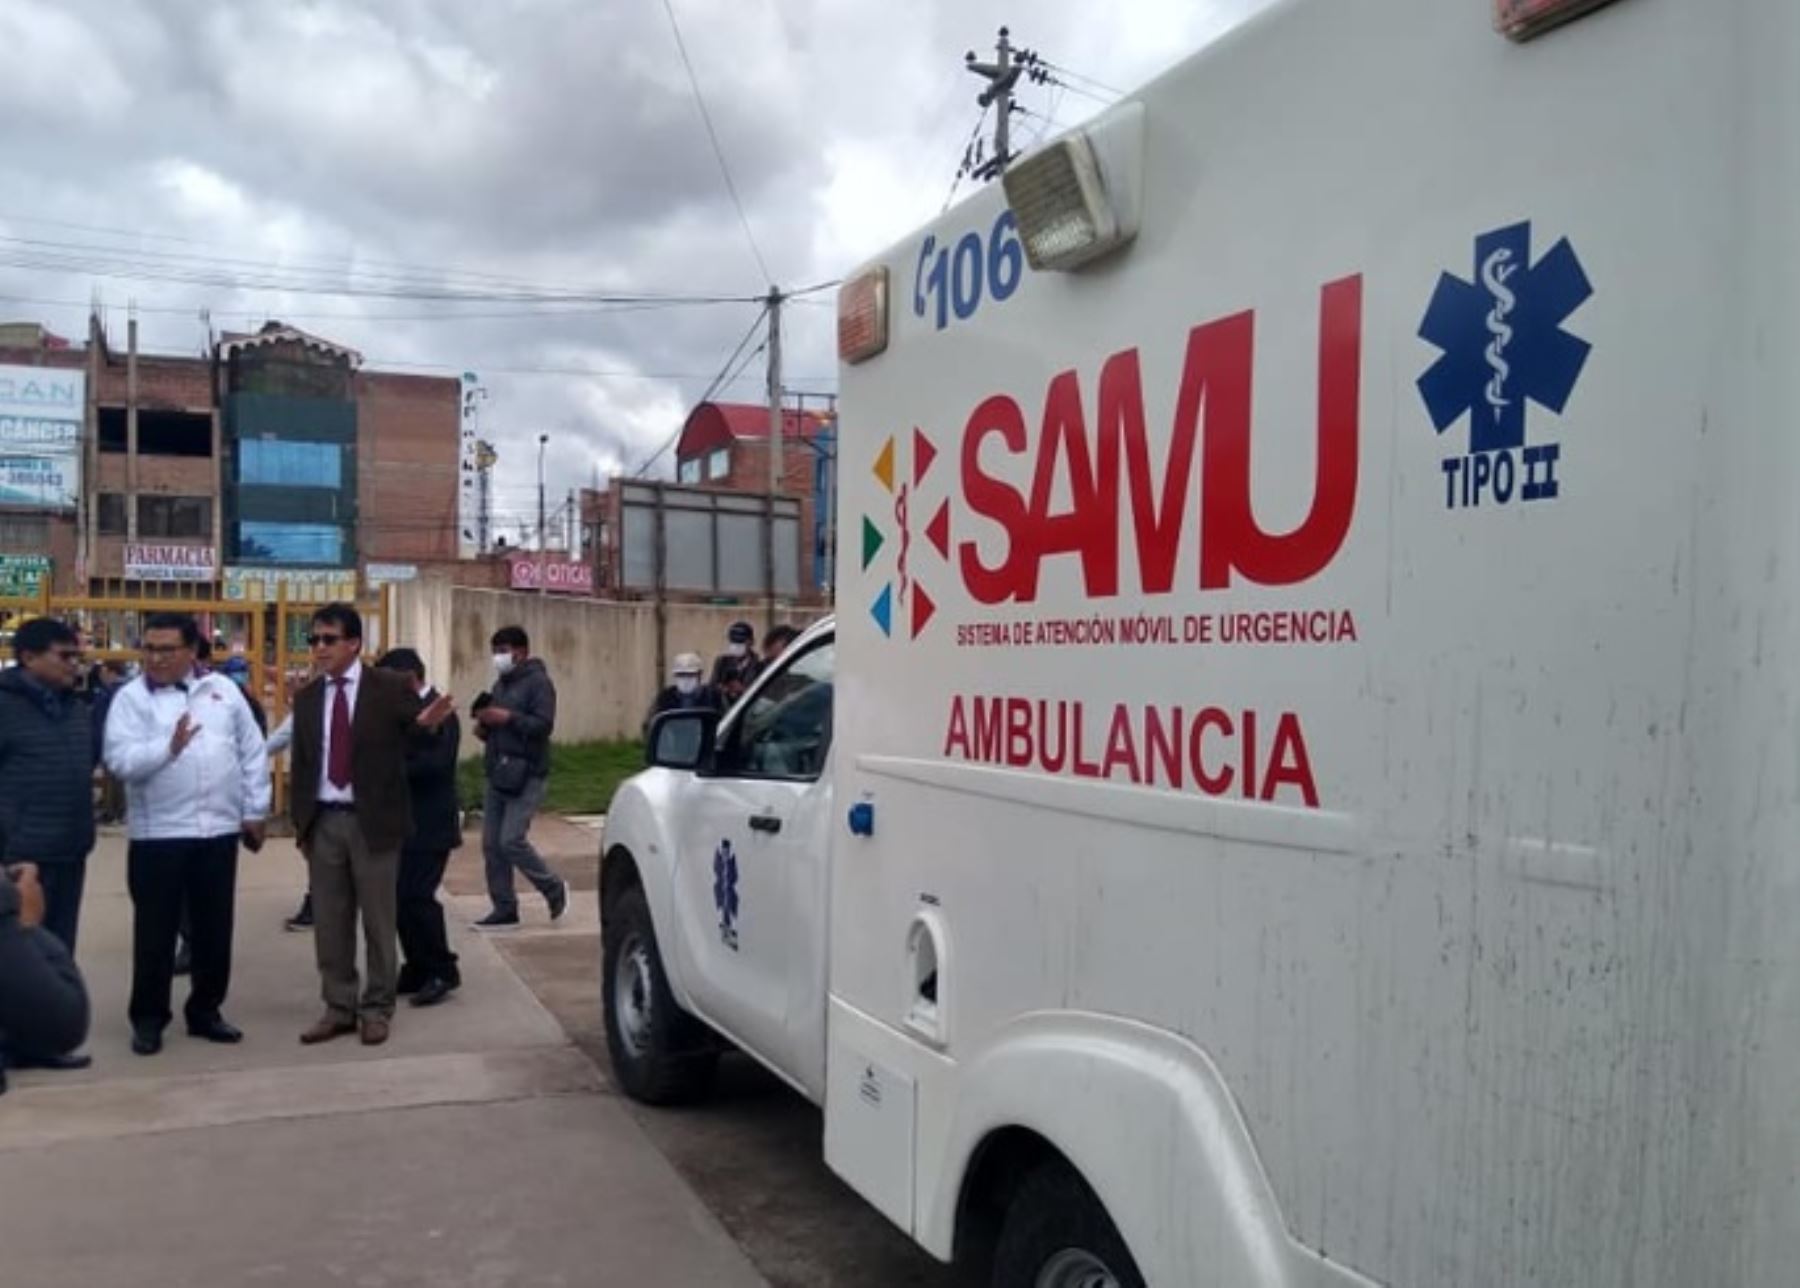 Gobernador regional de Puno, Agustín Luque, y funcionarios de la Diresa Puno entregan ambulancia a la red de salud de la provincia de San Román para fortalecer la prevención del contagio de coronavirus y desplegar la búsqueda activa de casos sospechosos.ANDINA/Difusión